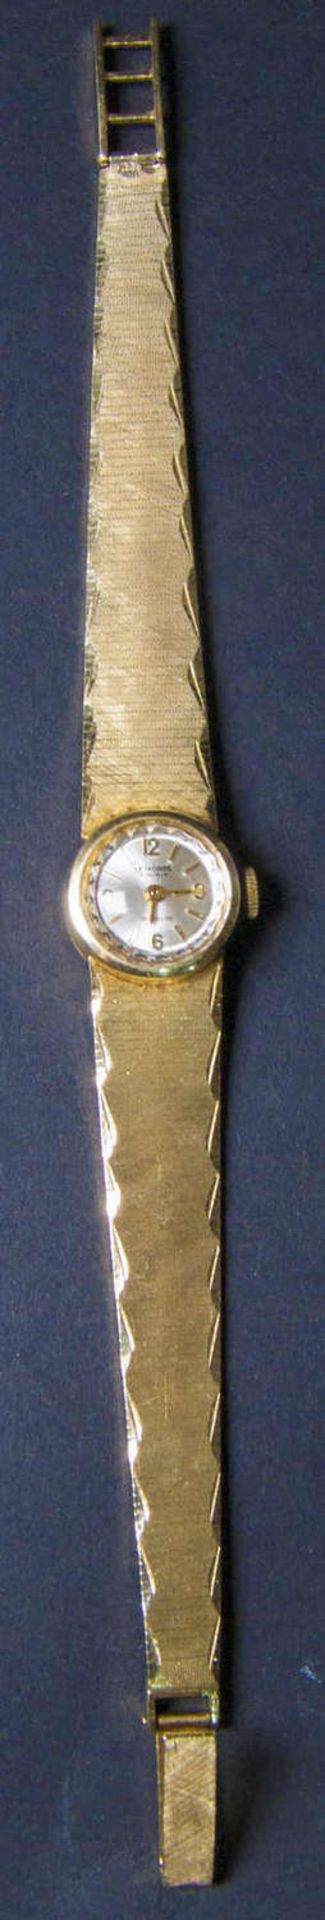 Le Monde Damen - Armbanduhr, Gold 585, Gehäuse und Armband gepunzt. Mechanisch, 17 Rubis. Gewicht: - Bild 2 aus 2